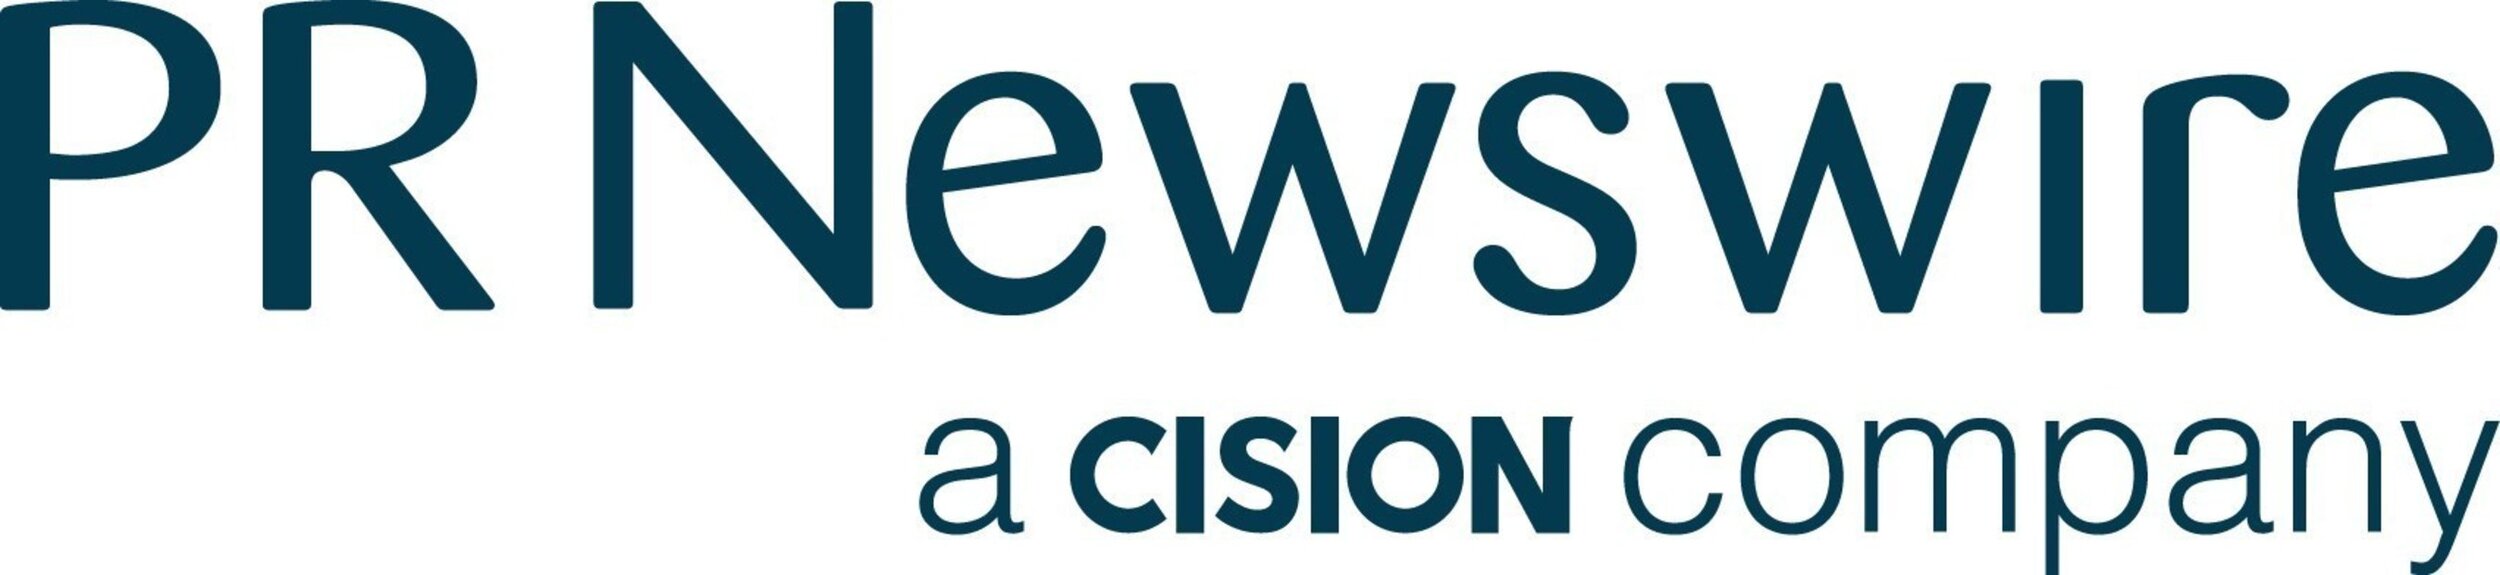 prnewswire logo.jpg